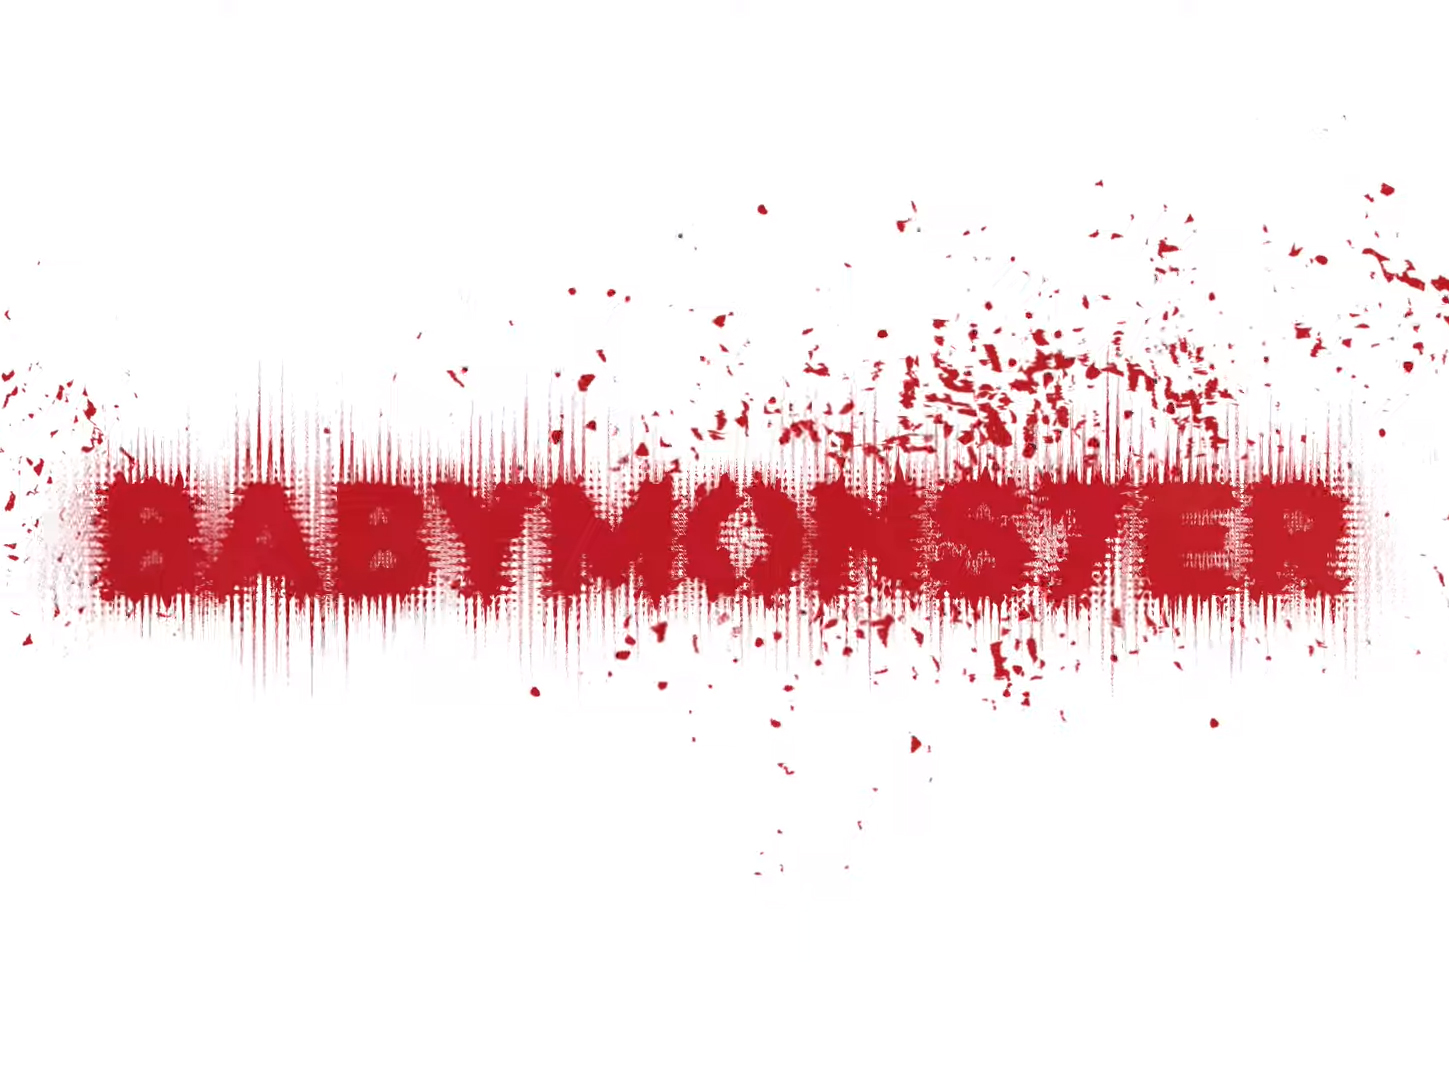 How to Preorder the BabyMonster Album, BABYMONS7ER